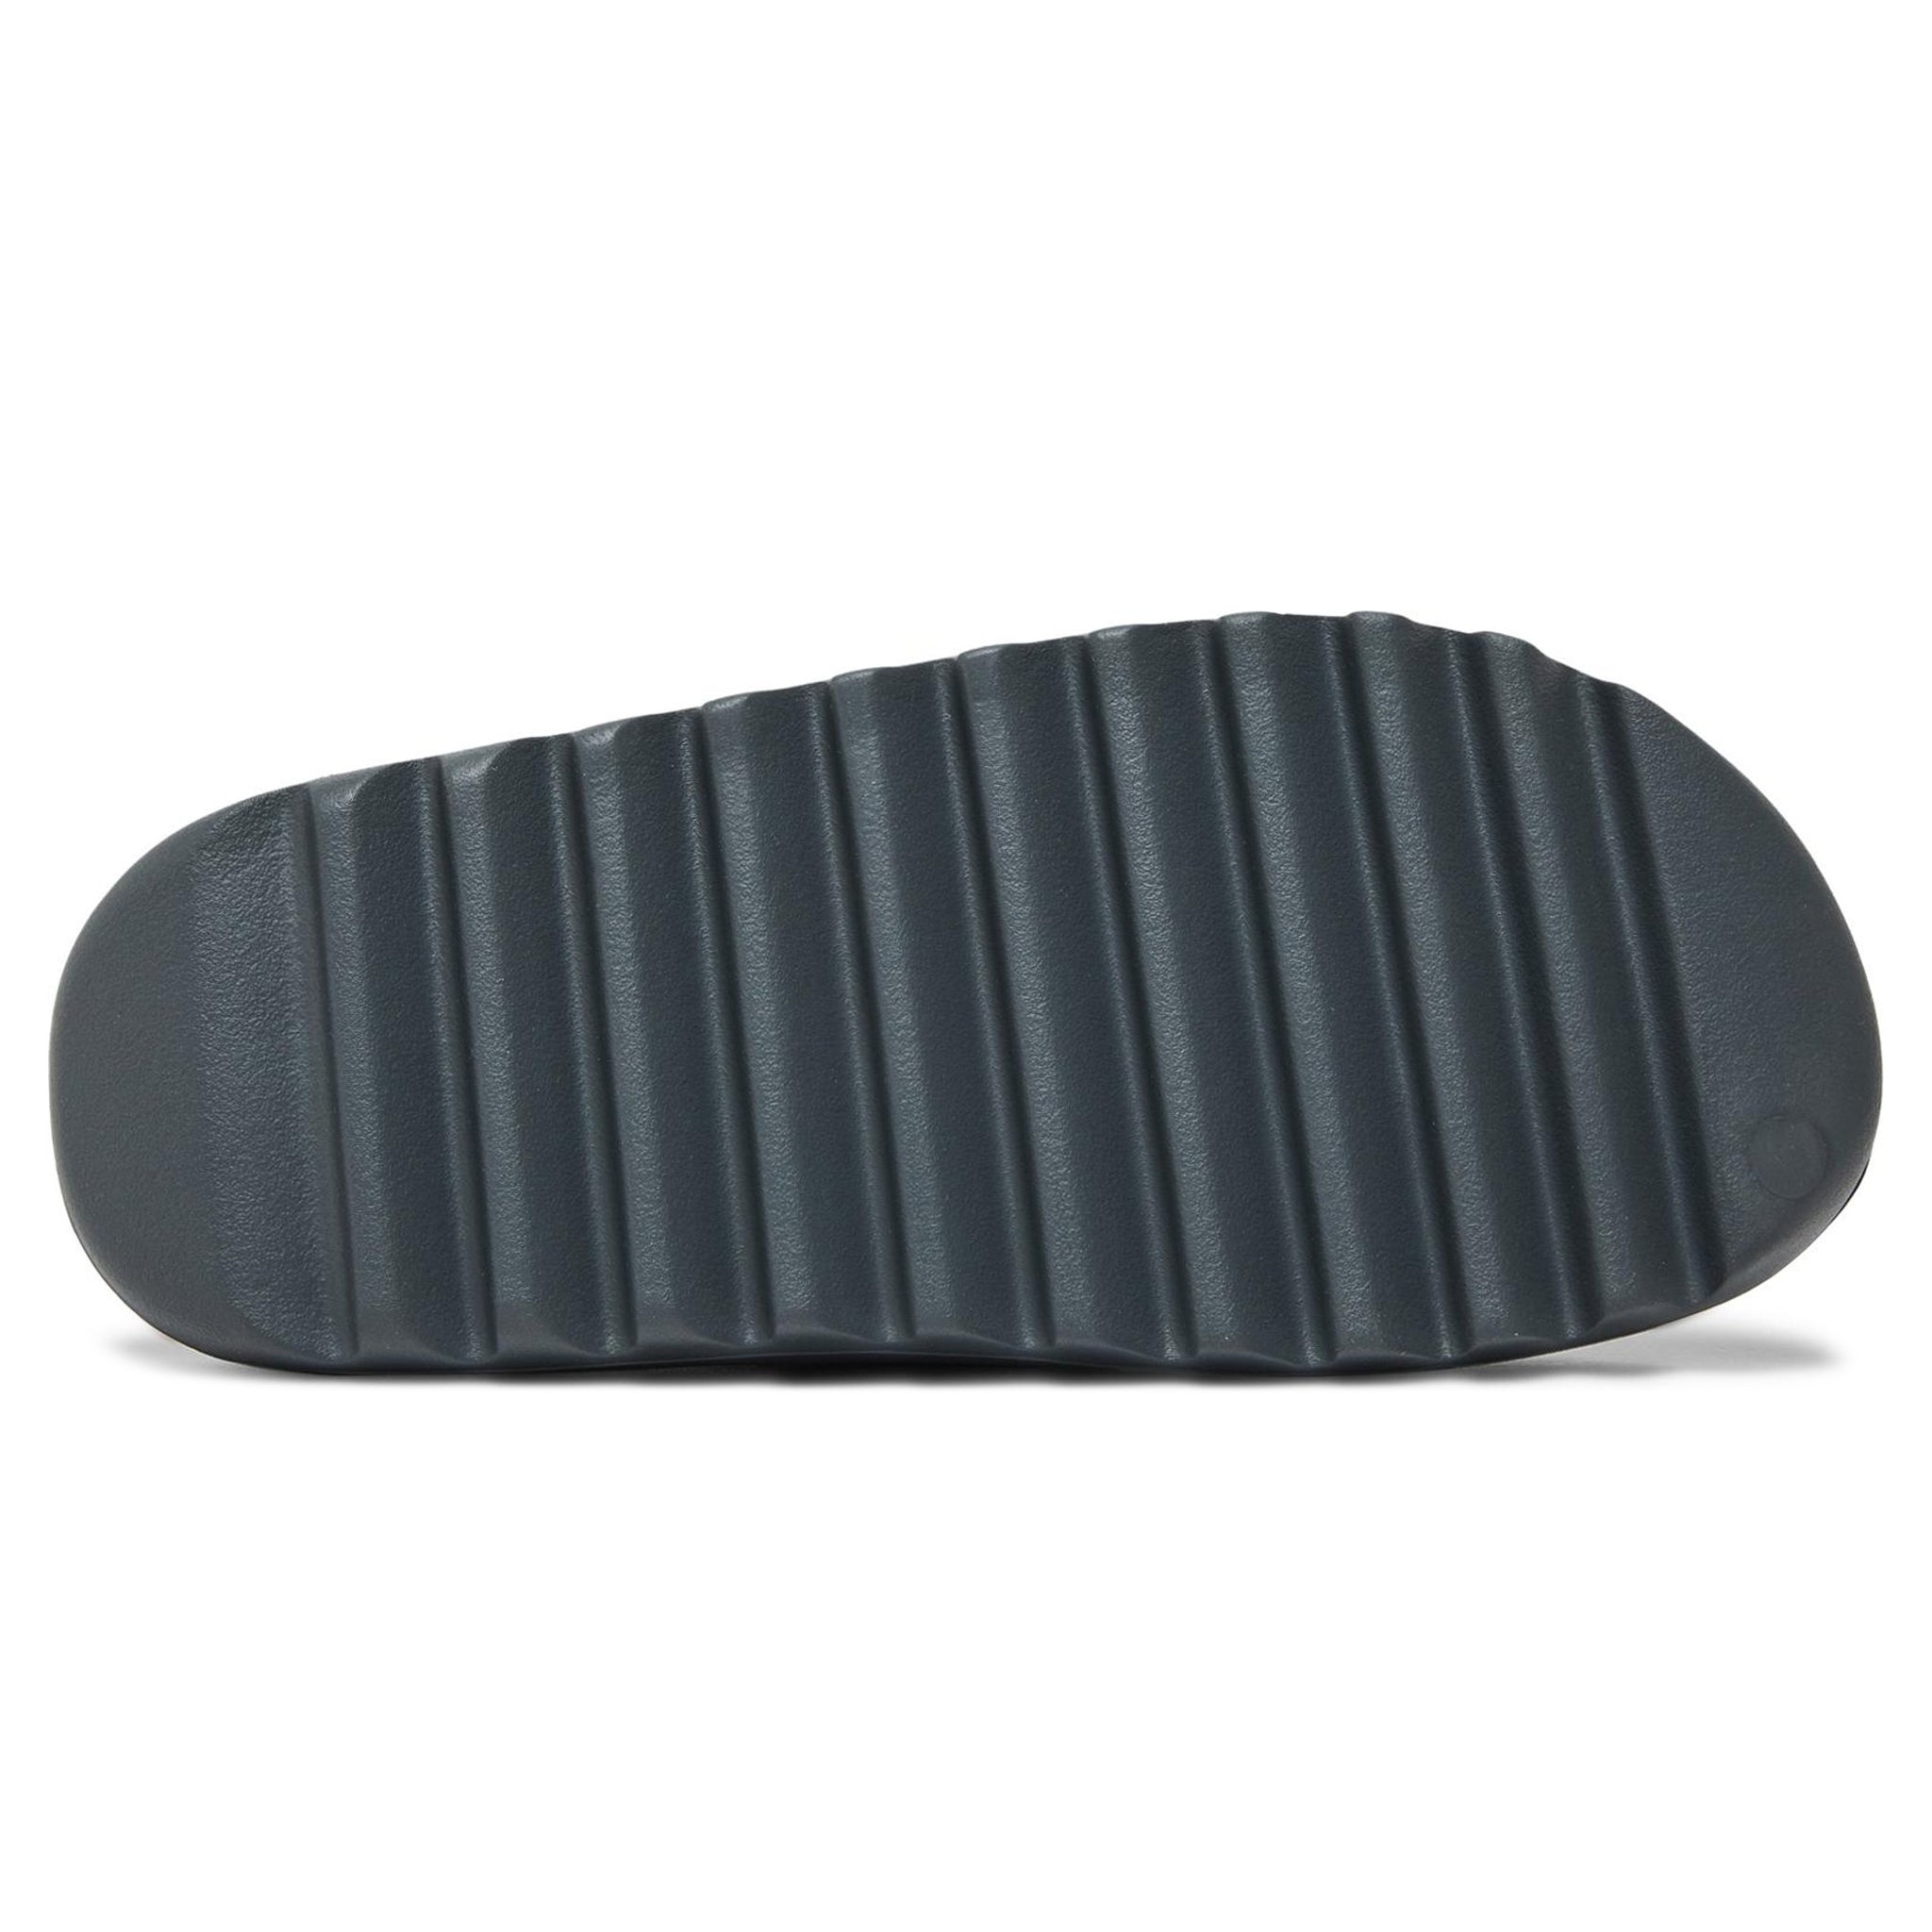 Adidas Yeezy Slide 'Slate Grey' 